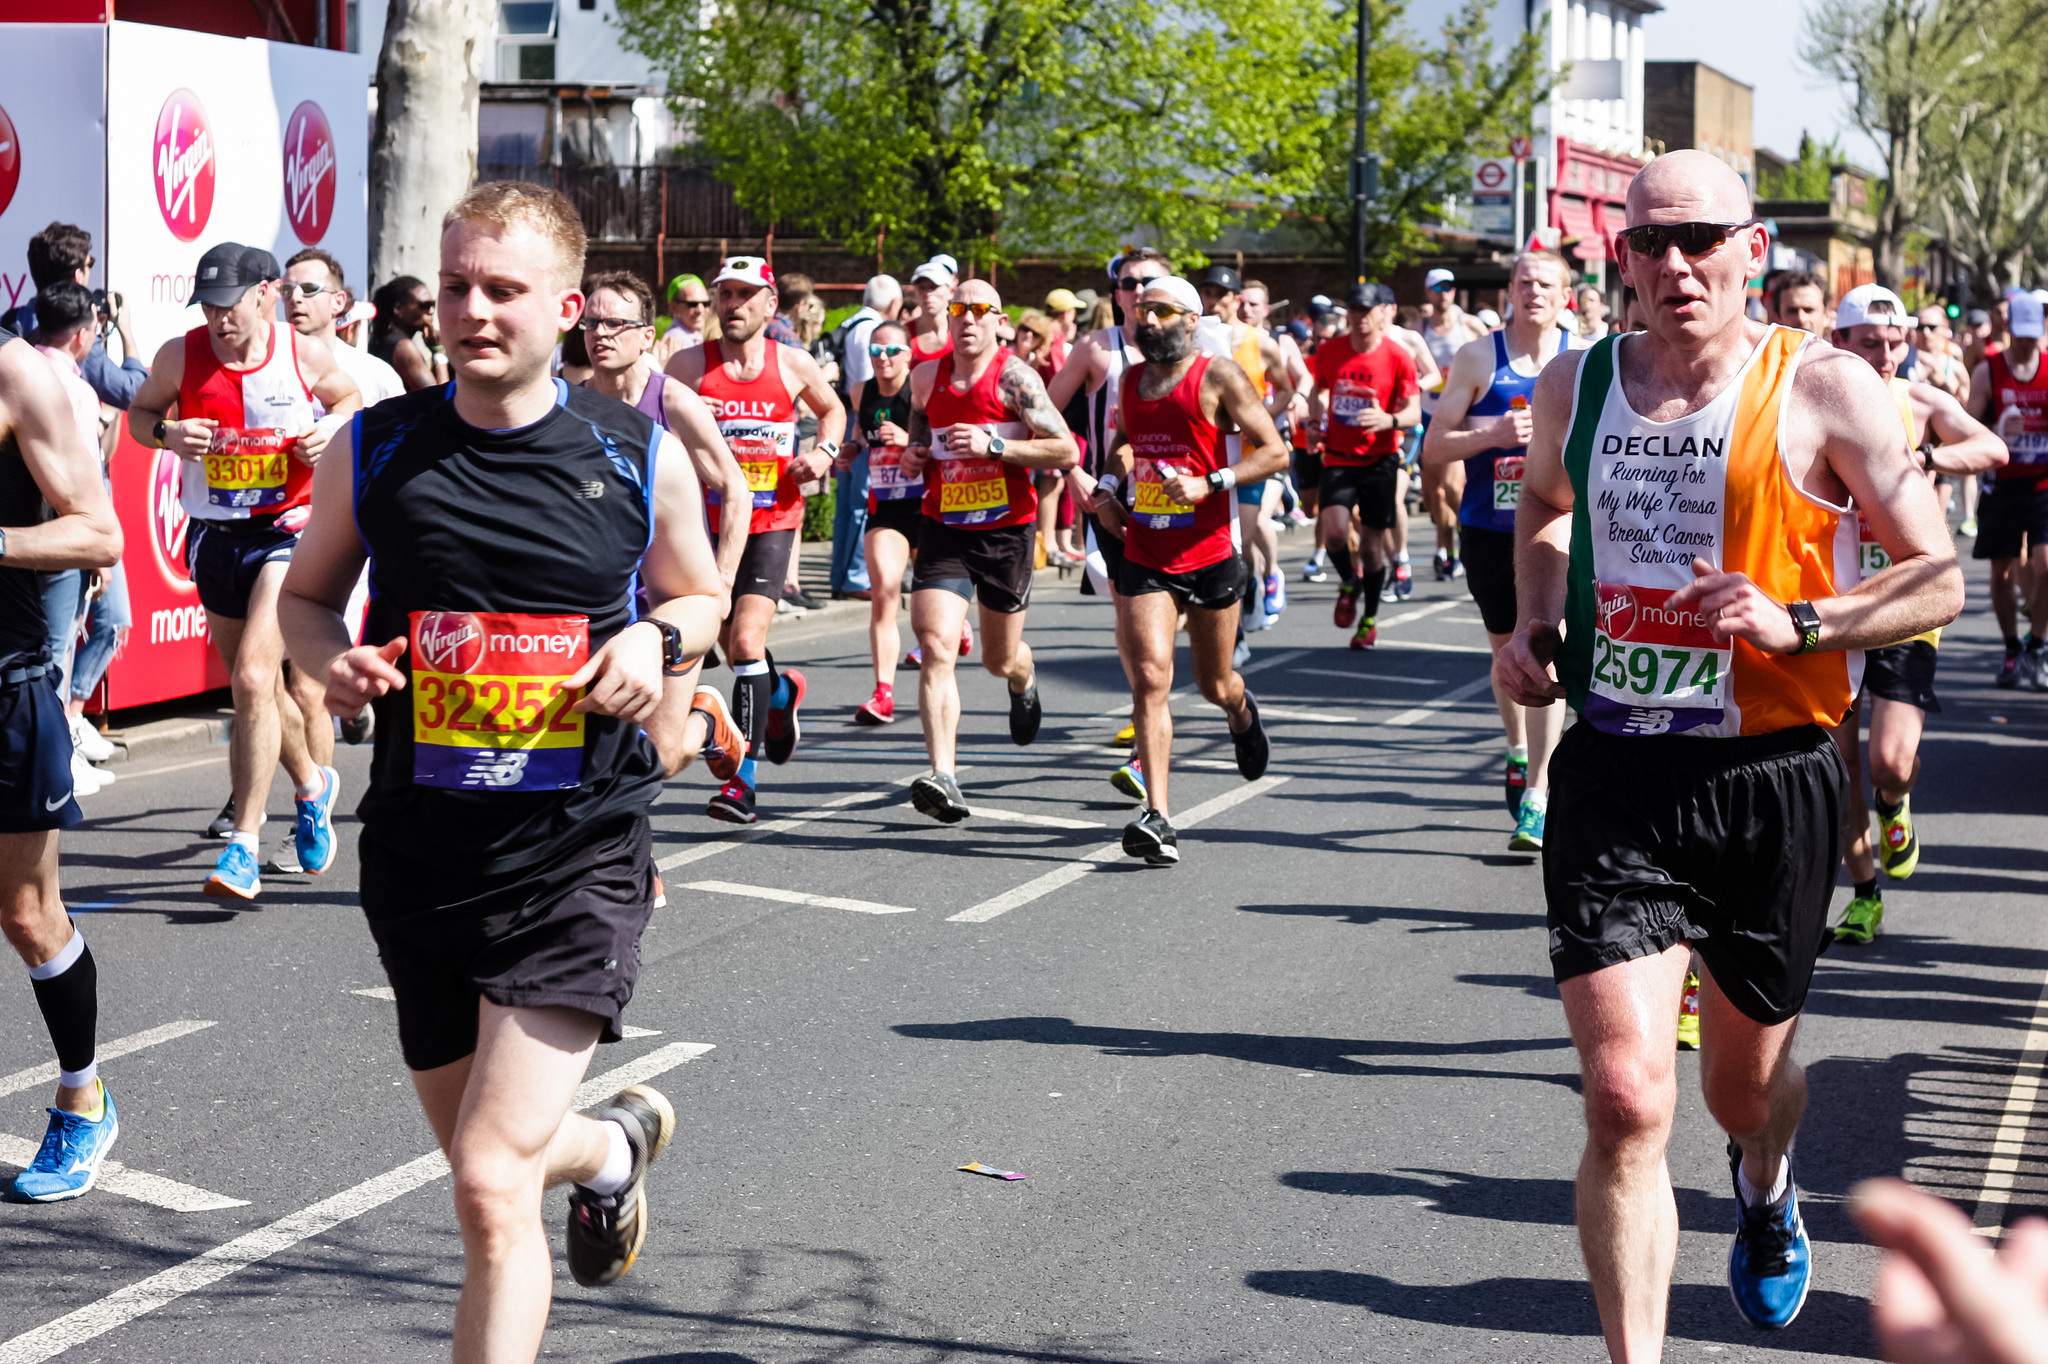 Declan - "Running For My Wife Teresa, Breast Cancer Survivor" - 2018 London Marathon